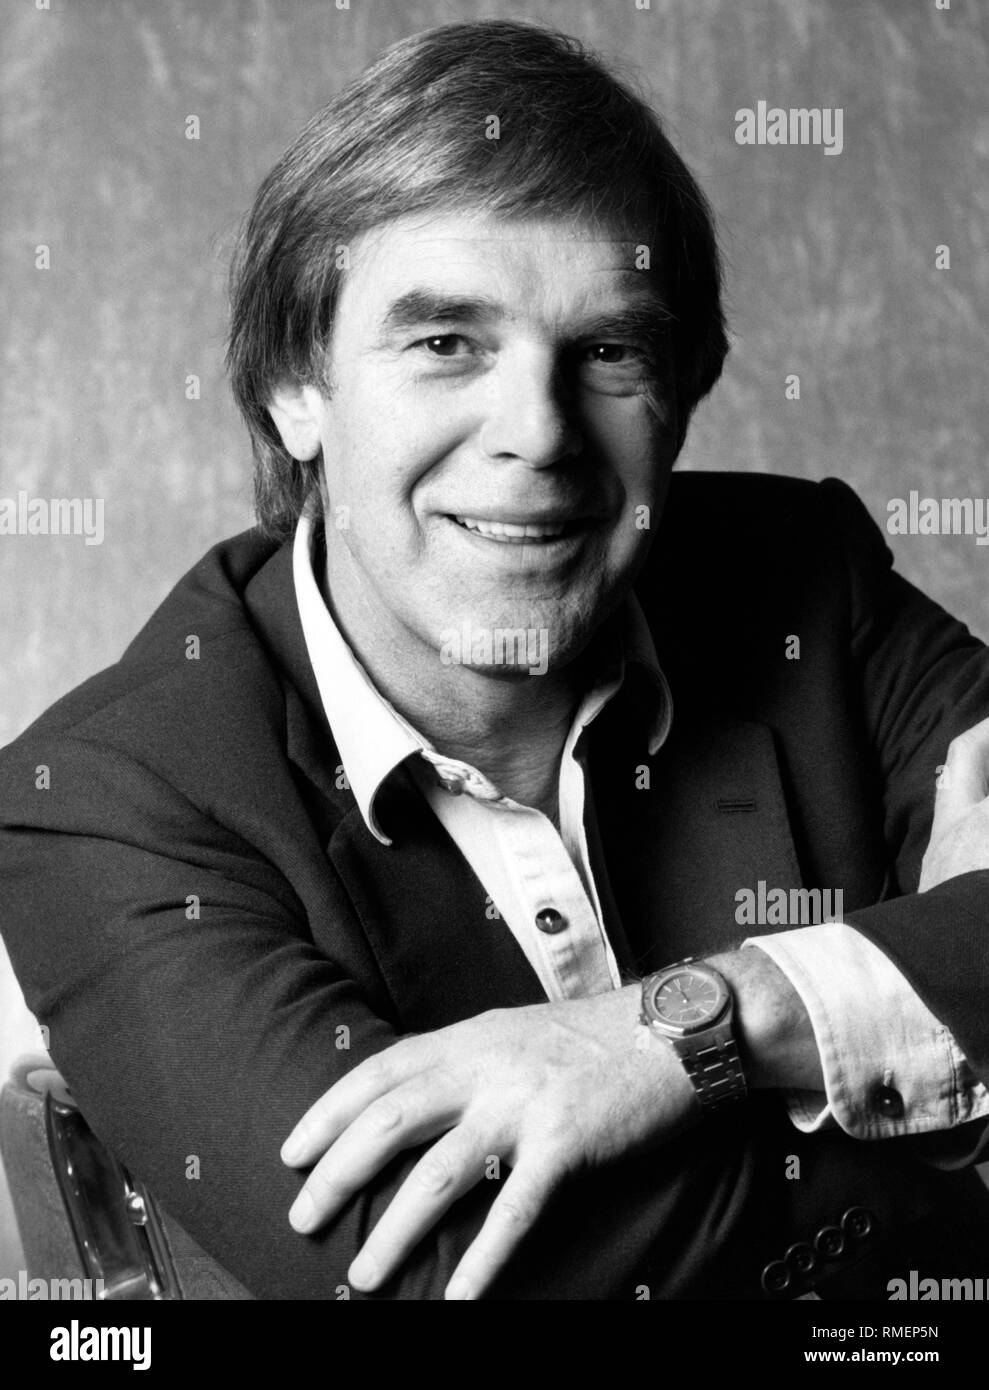 Portrait de l'acteur, réalisateur et auteur Horst Juessen. Photo non datée, probablement au début des années 90. Banque D'Images